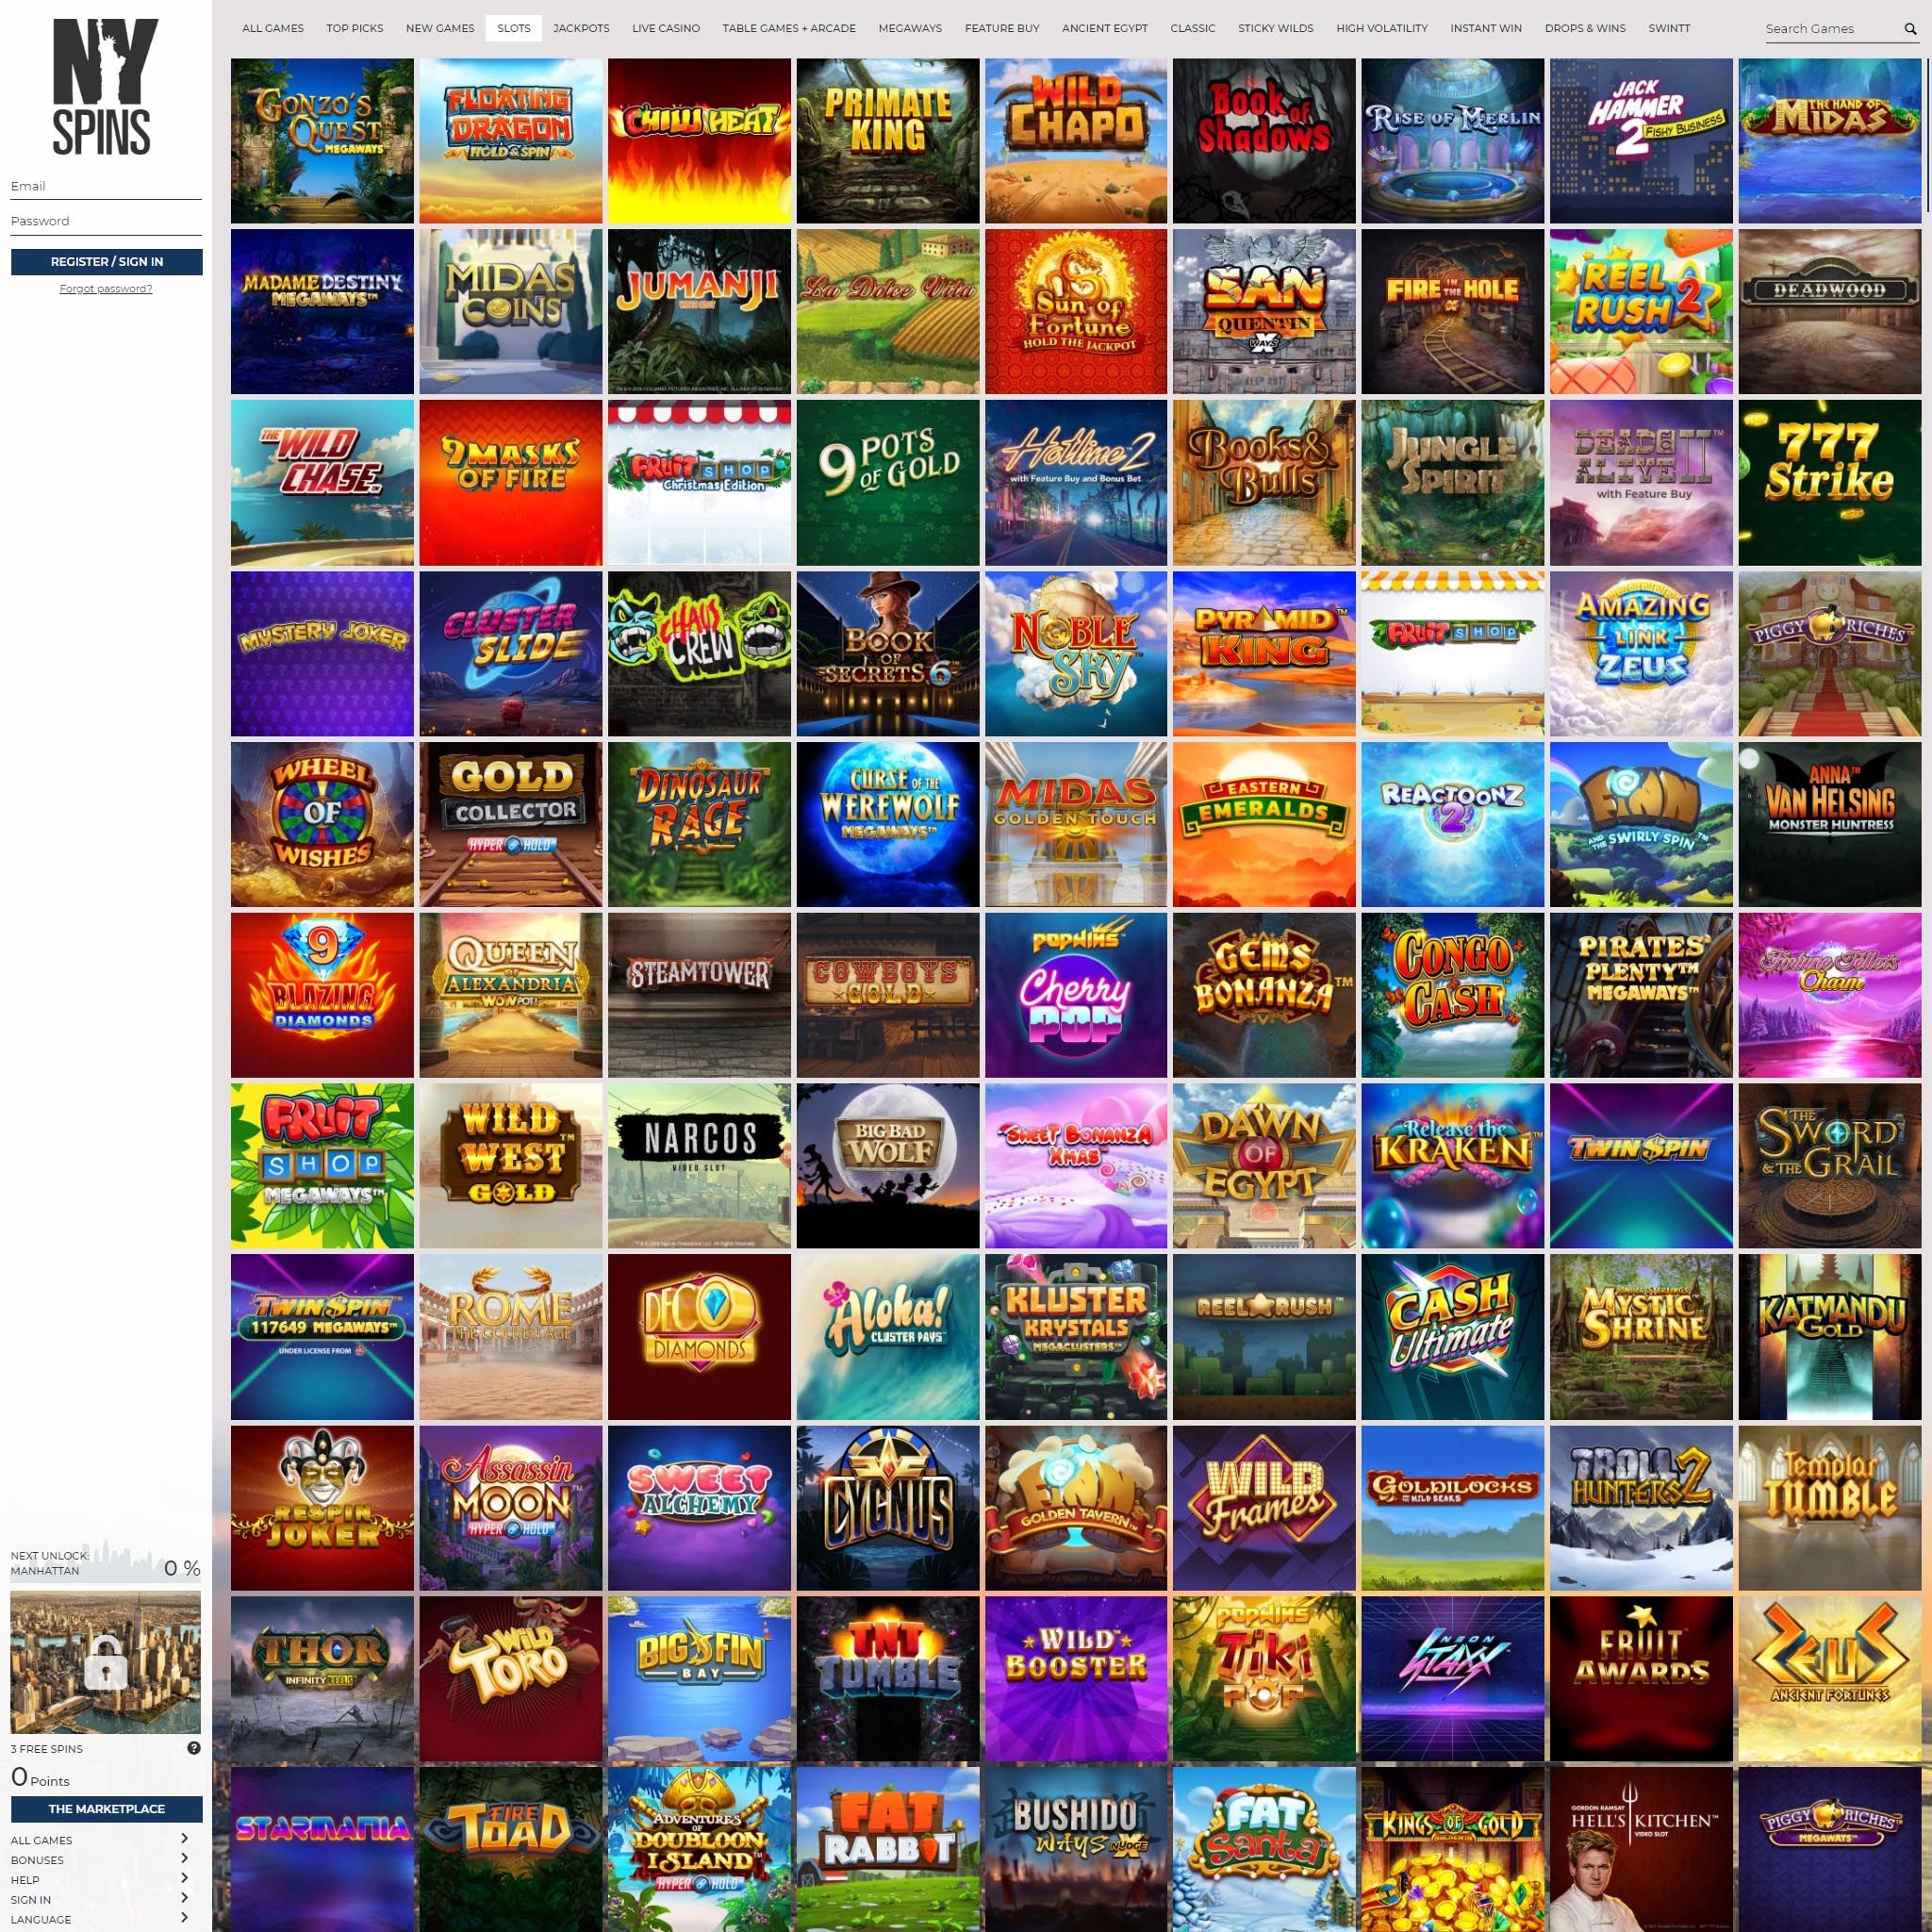 NYspins full games catalogue